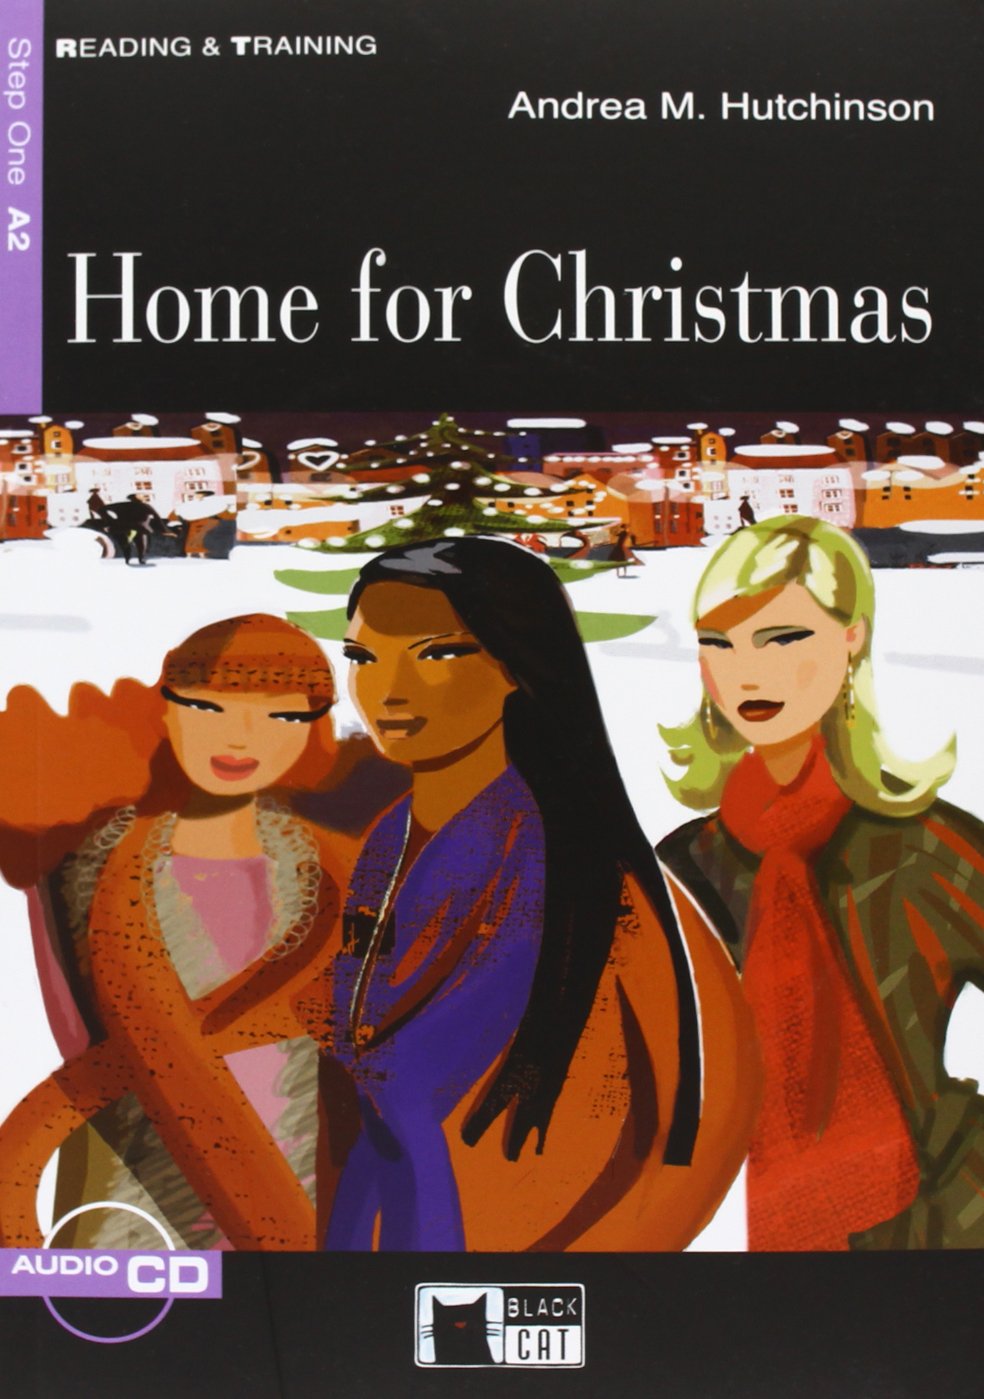 Home for Christmas + Audio CD